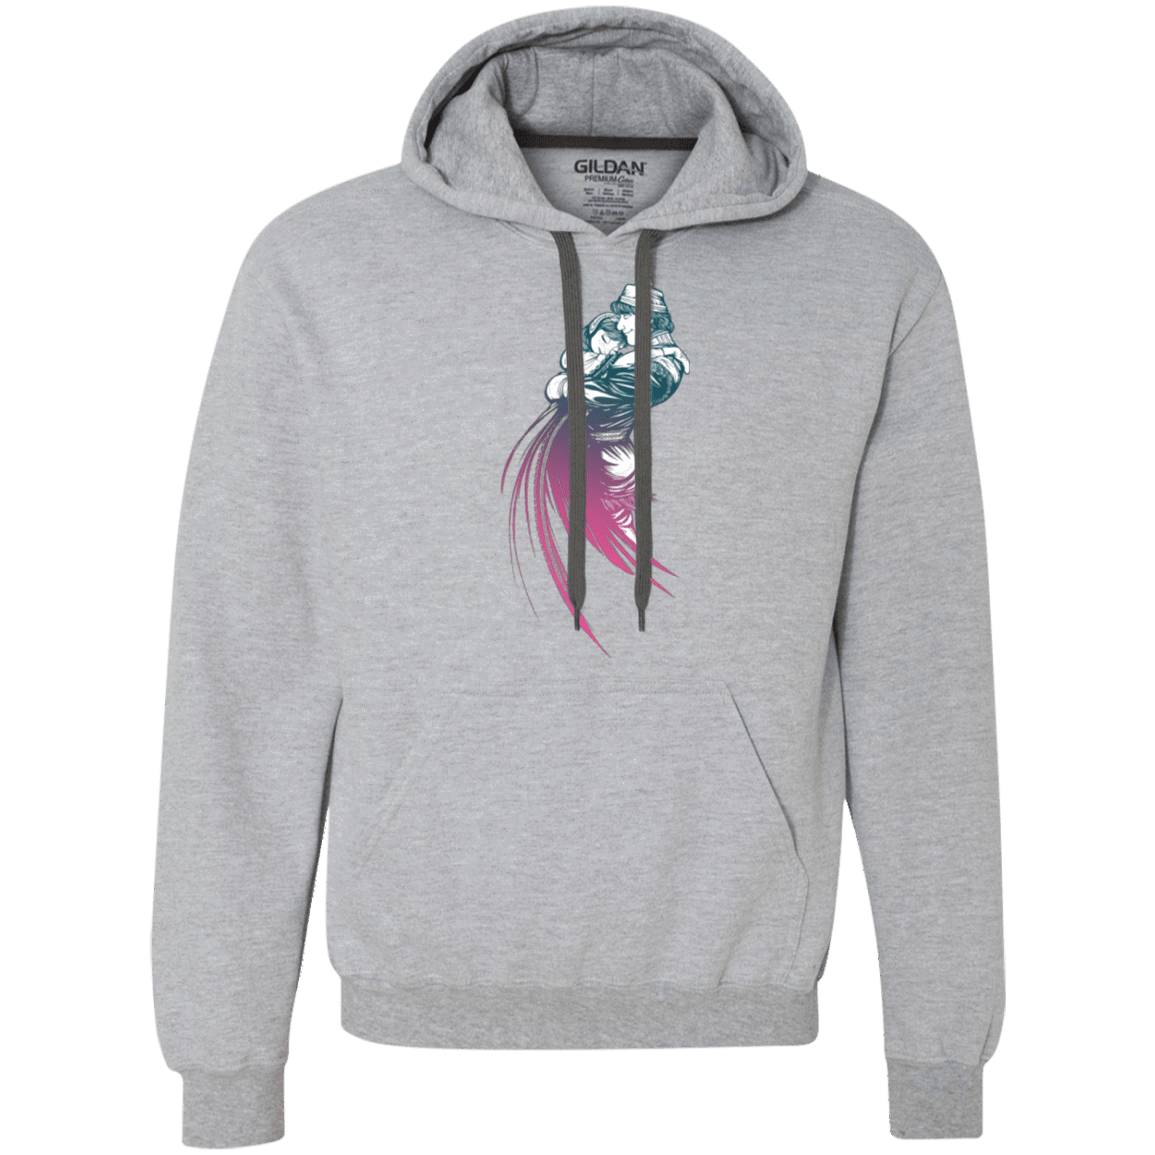 Sweatshirts Sport Grey / Small Frozen Fantasy 2 Premium Fleece Hoodie